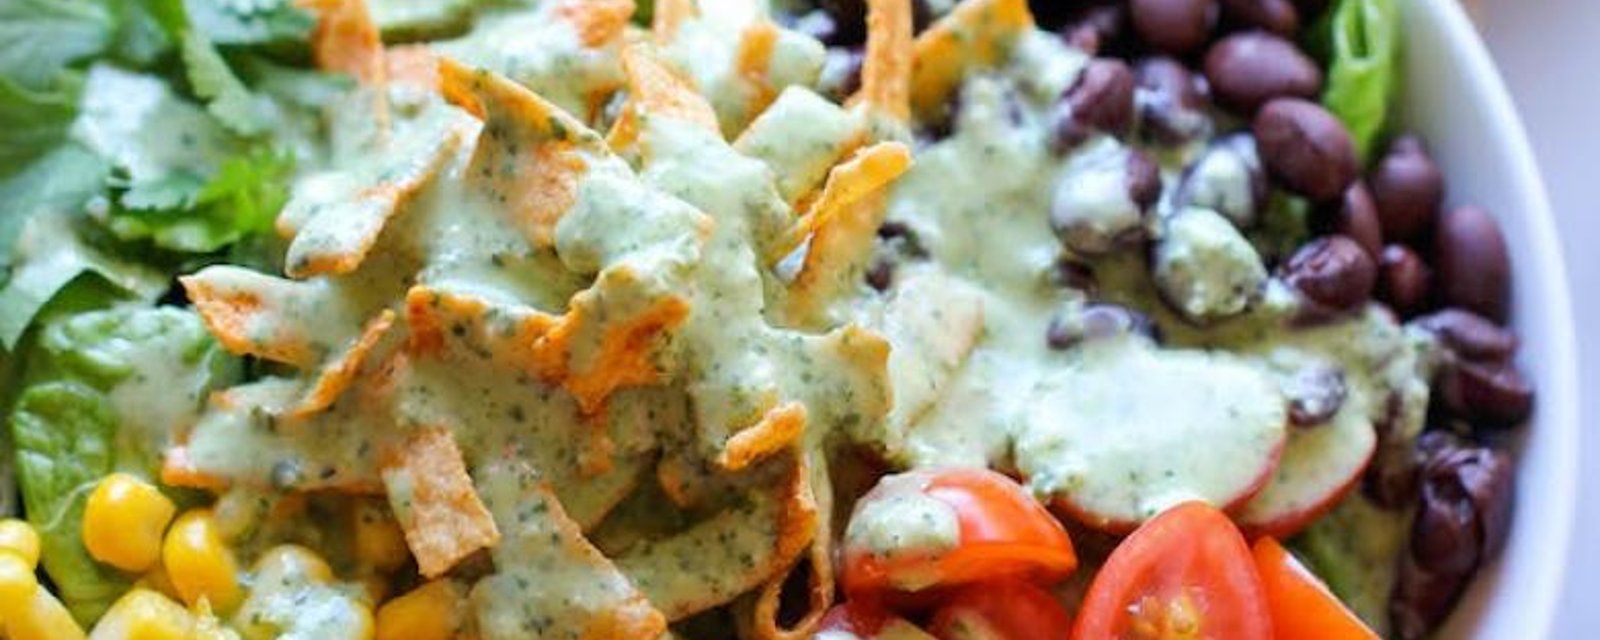 Une salade style Tex-Mex avec une vinaigrette incroyablement crémeuse  à la coriandre et yogourt grec